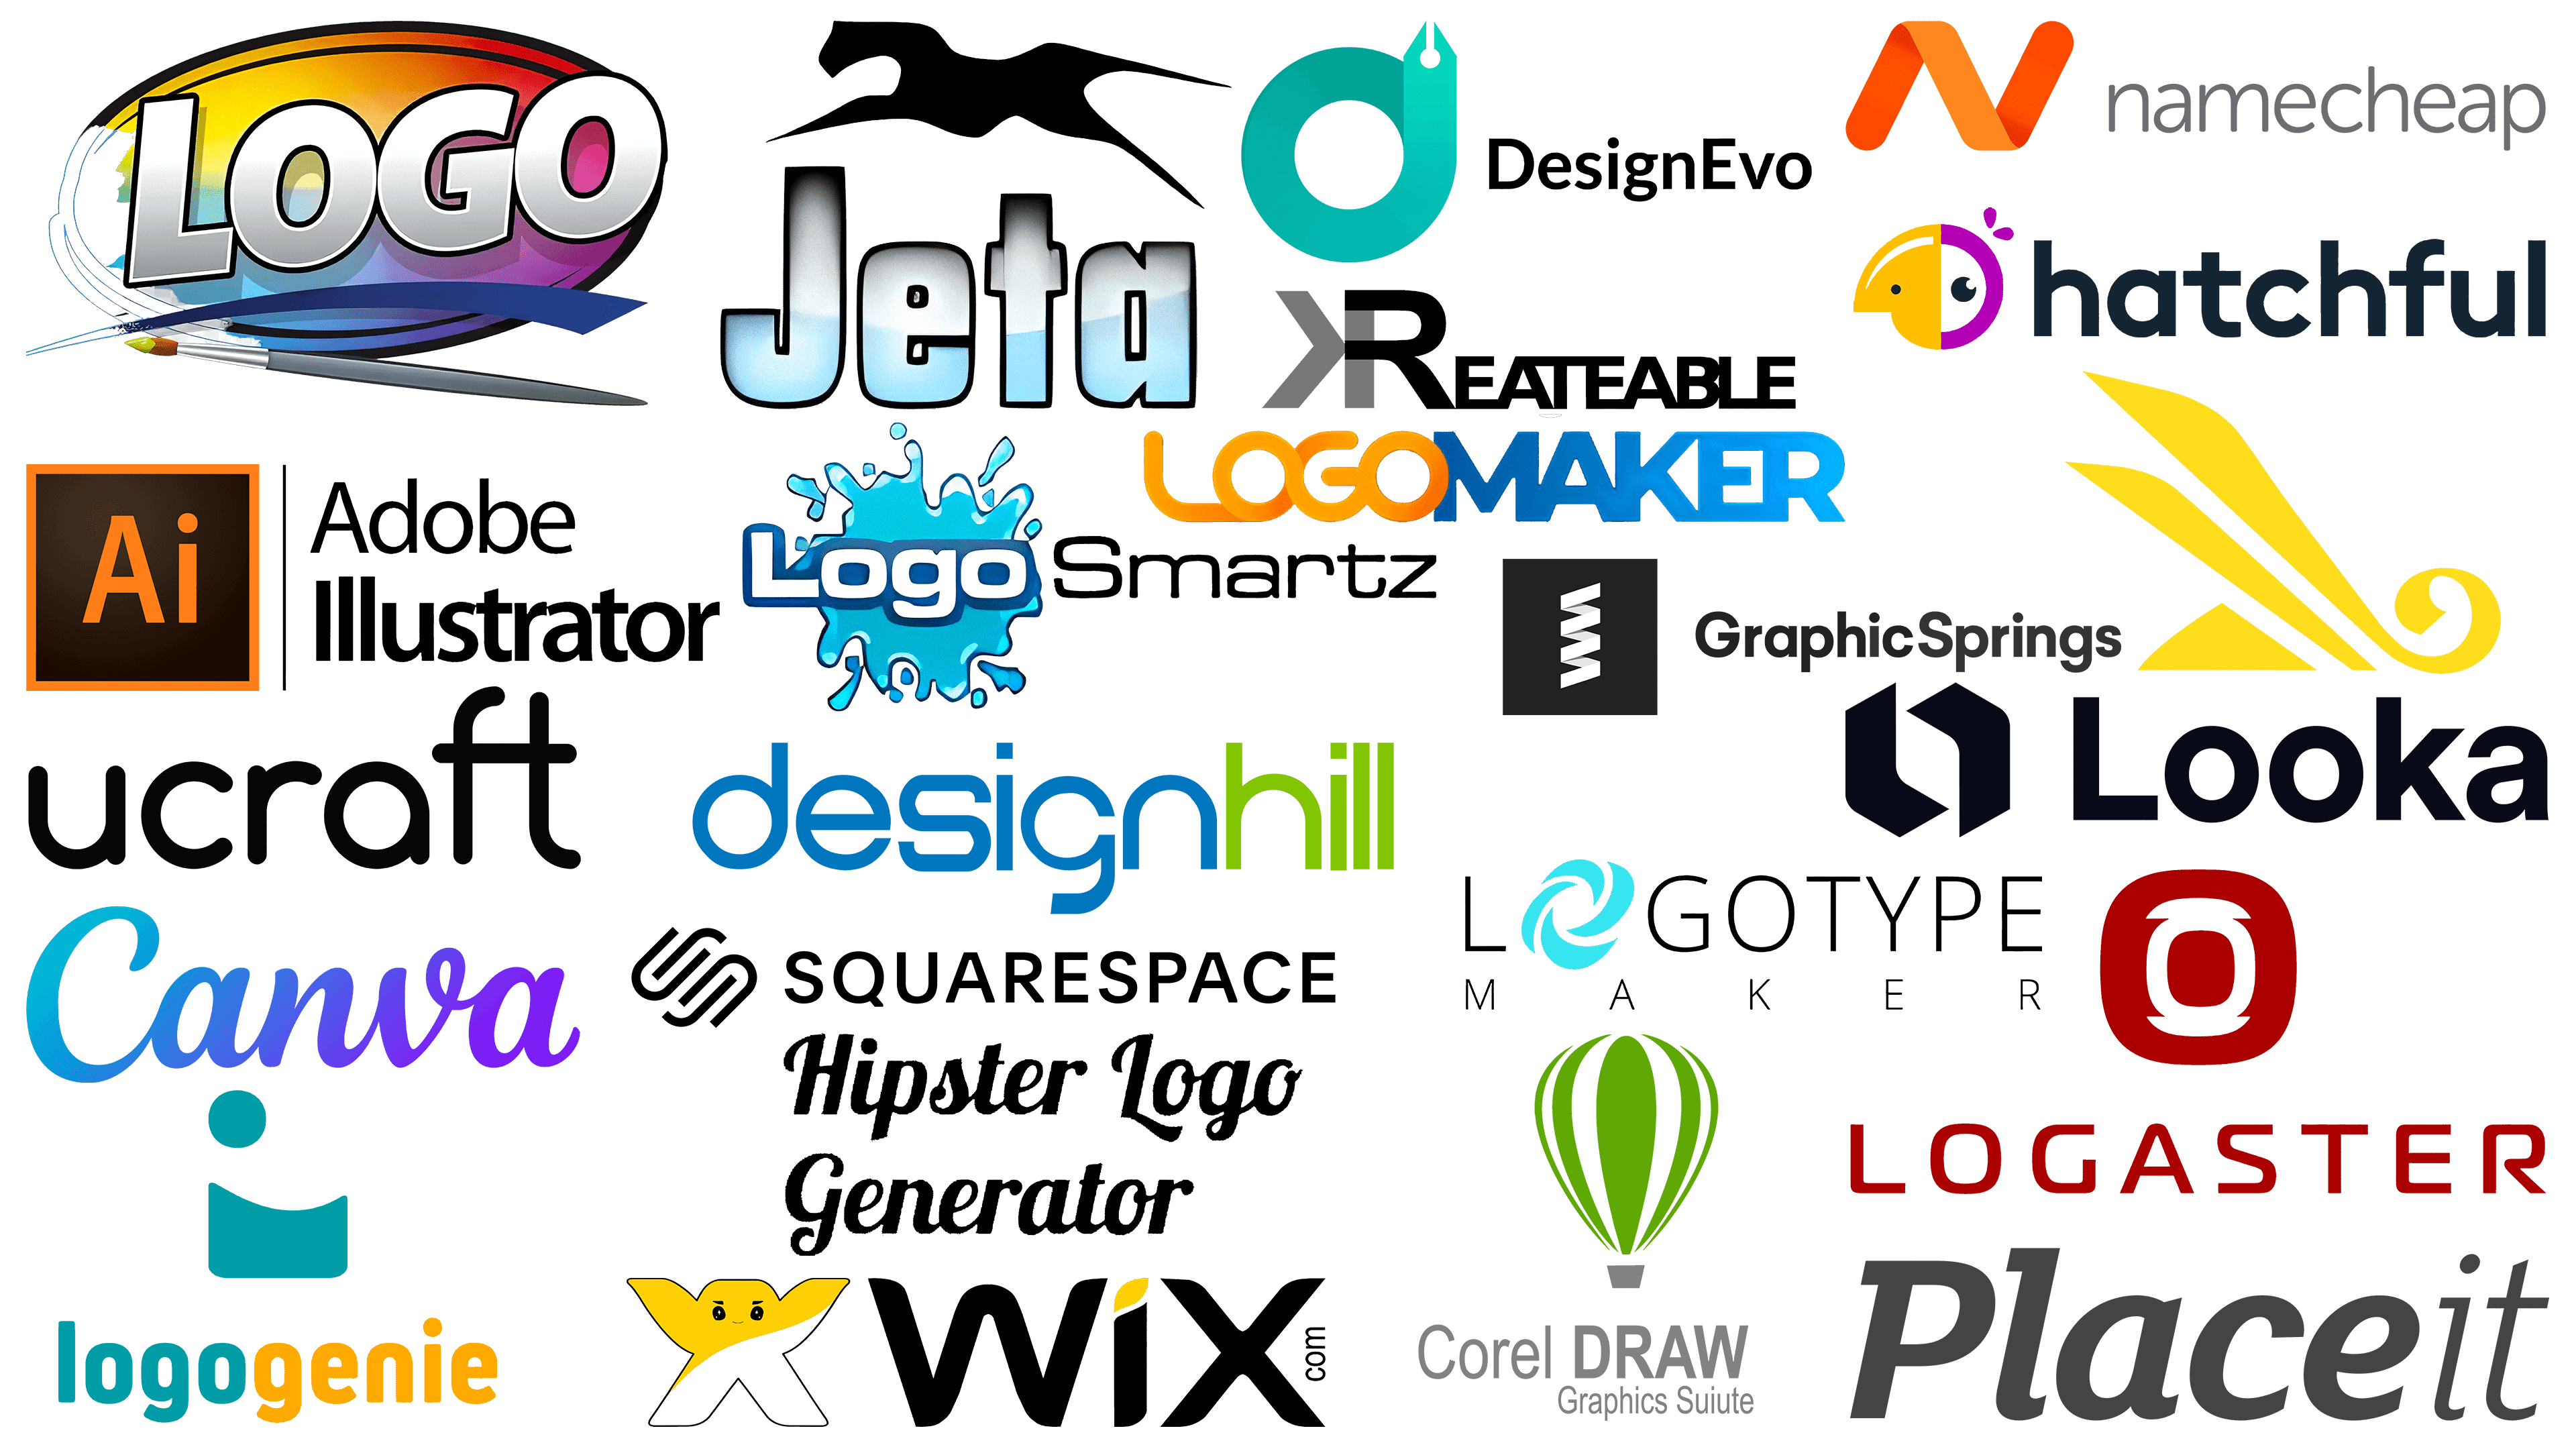 softwares for designing logos